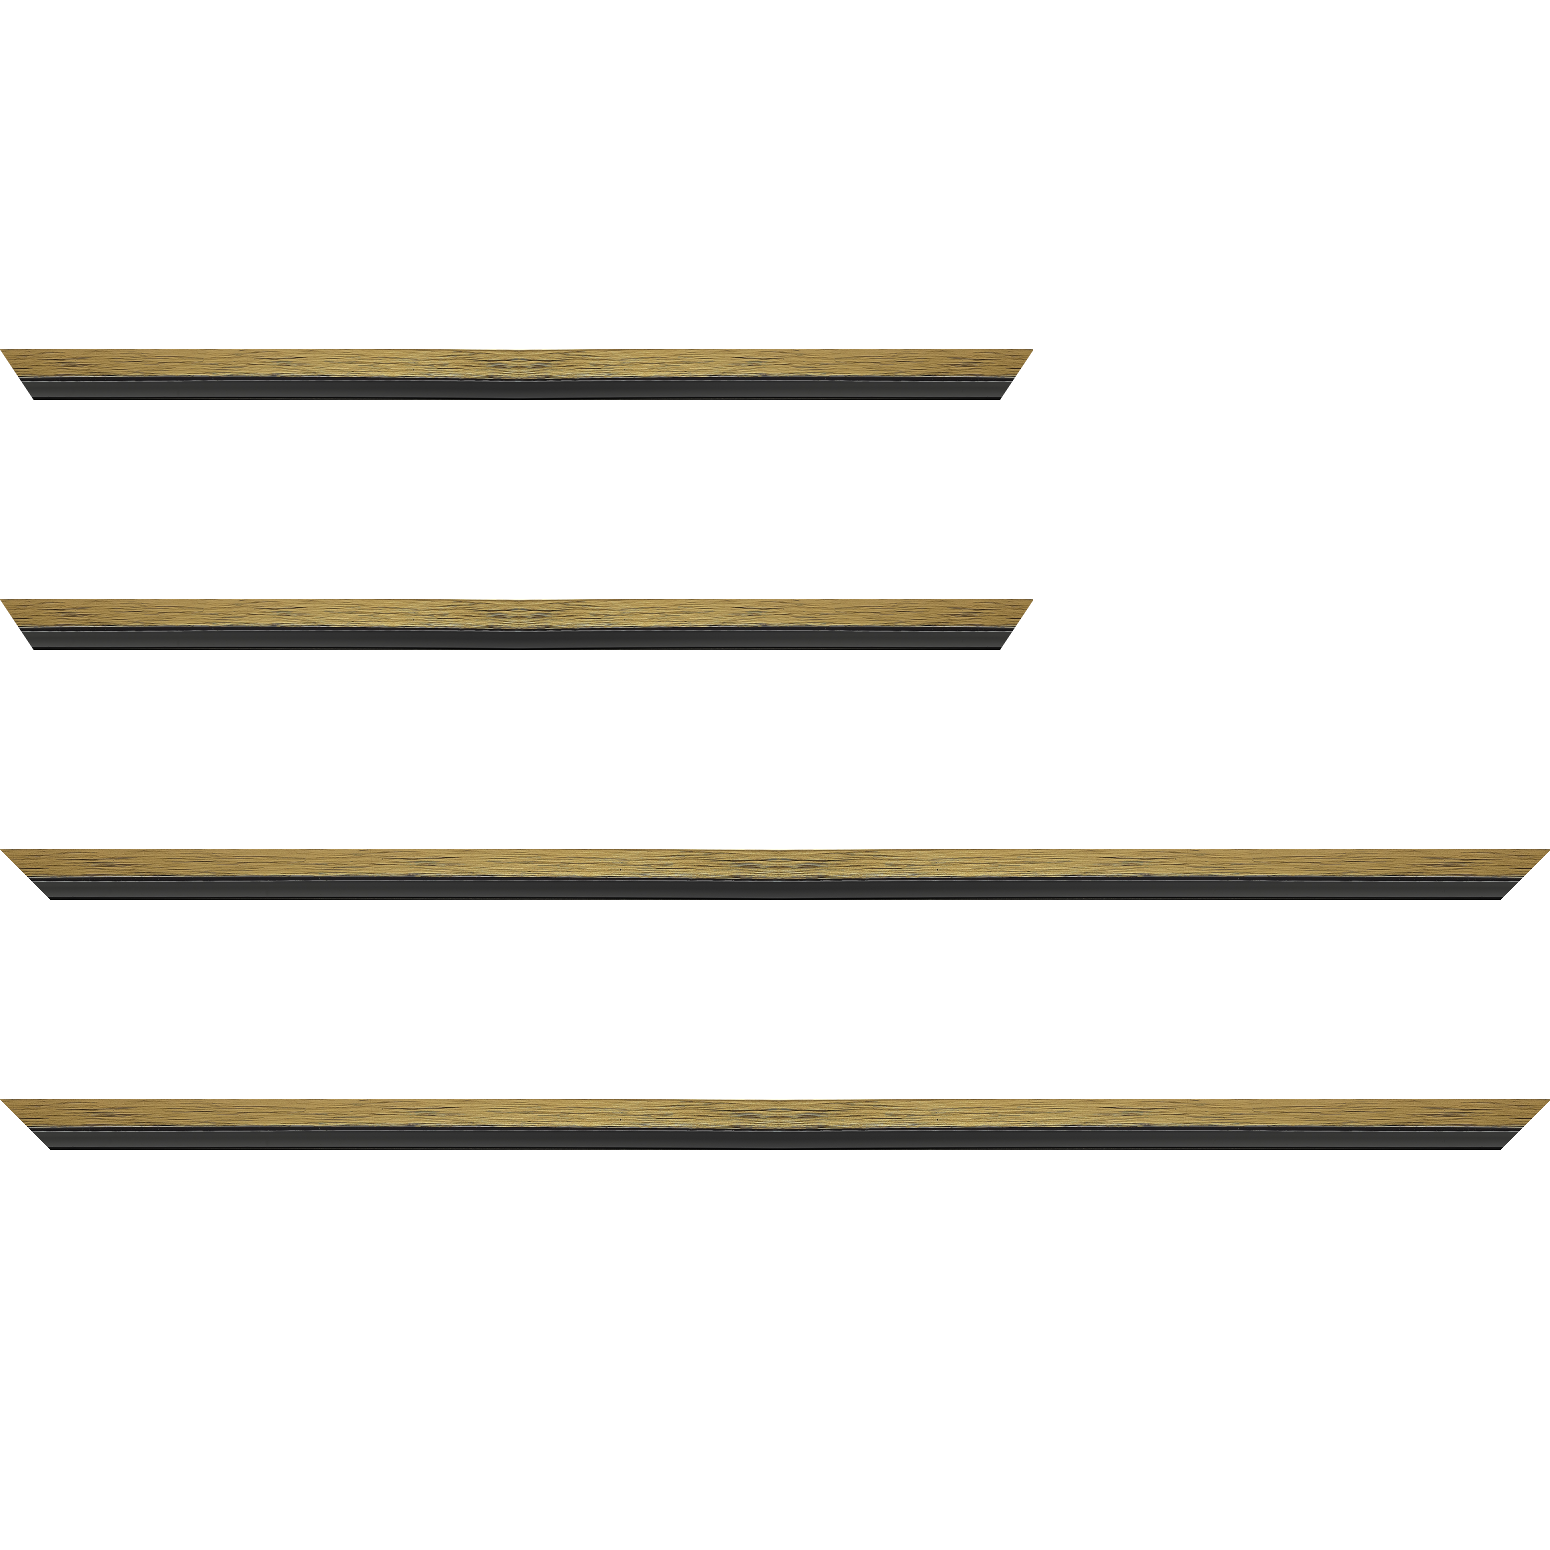 Baguette bois profil plat largeur 1.6cm couleur or contemporain filet noir en retrait de la face du cadre de 6mm assurant un effet très original - 34x40